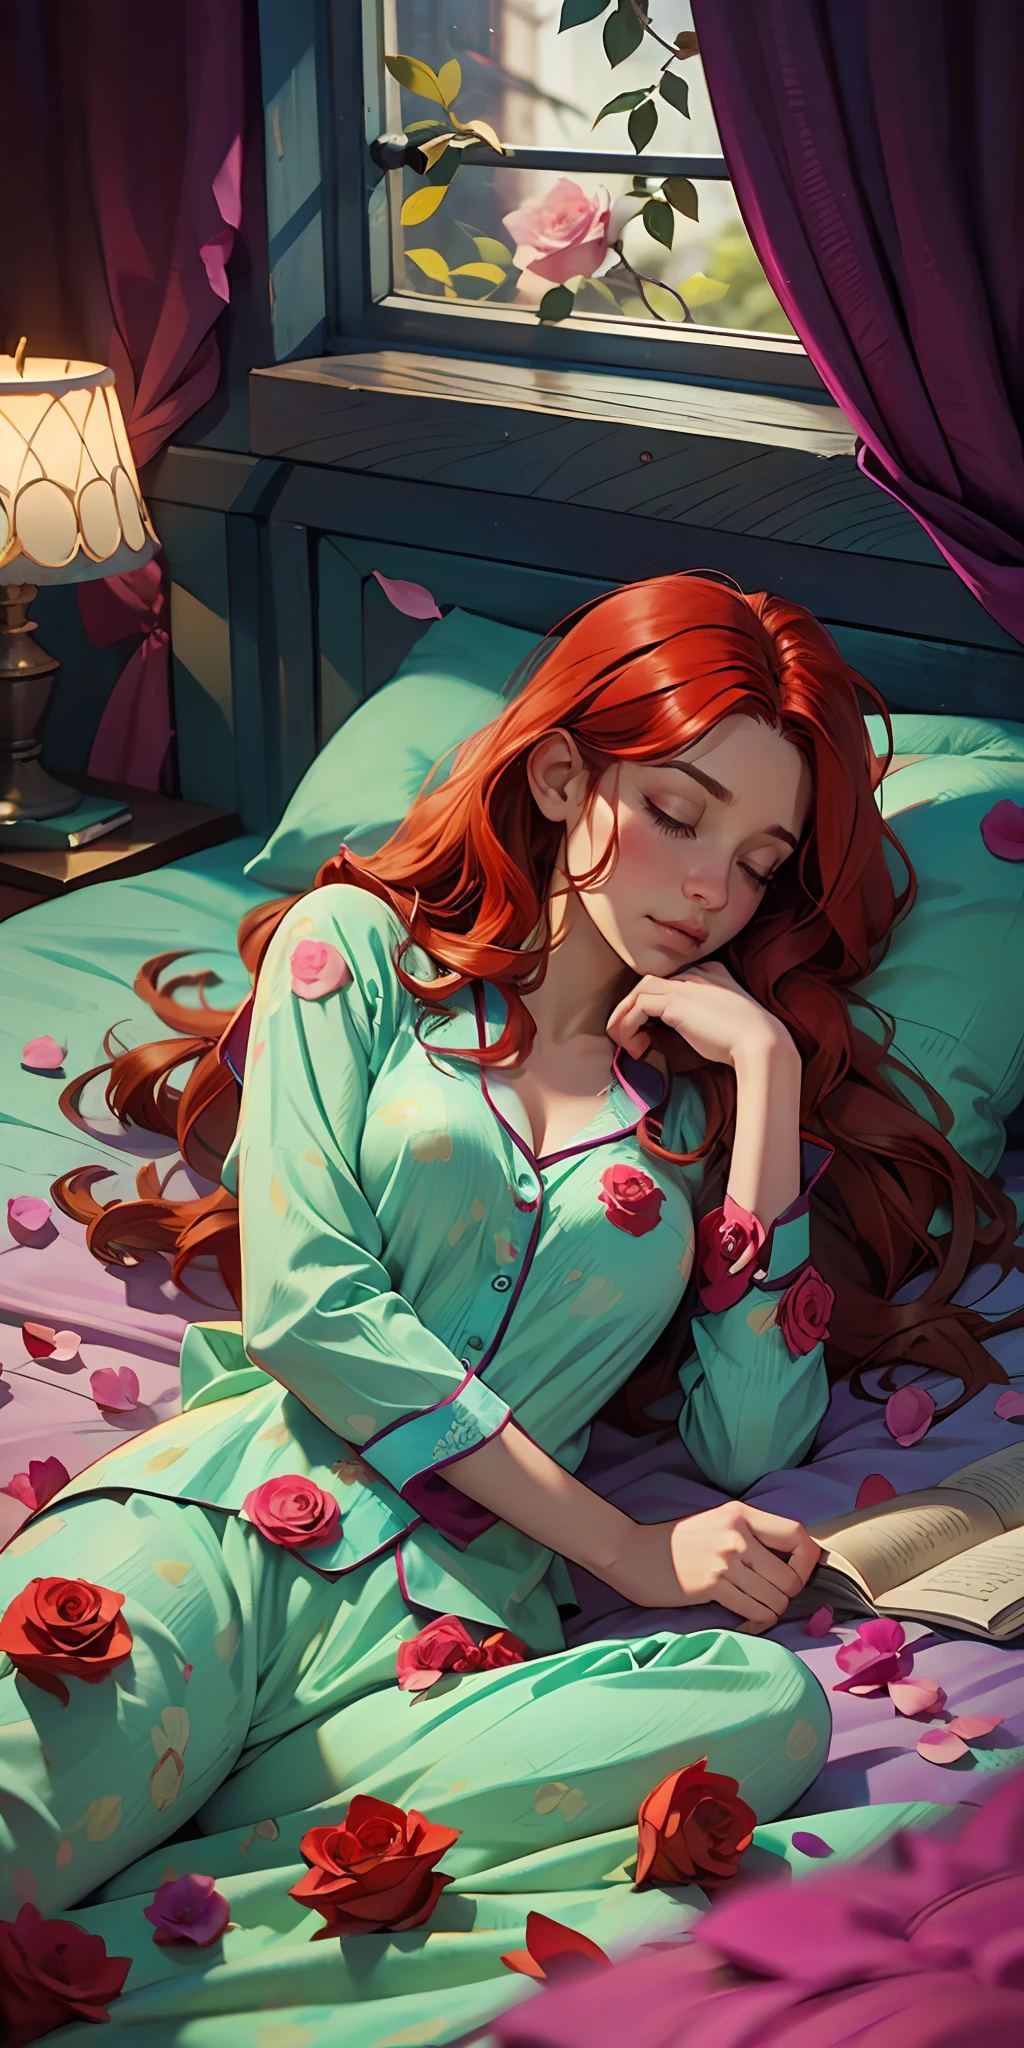 熟睡的女人, 實際的, 她穿著睡衣, 紅色髮色, 視差, 超超级对比度, 睡在鋪滿玫瑰花瓣的華麗床上, 攝影比賽獲獎作品